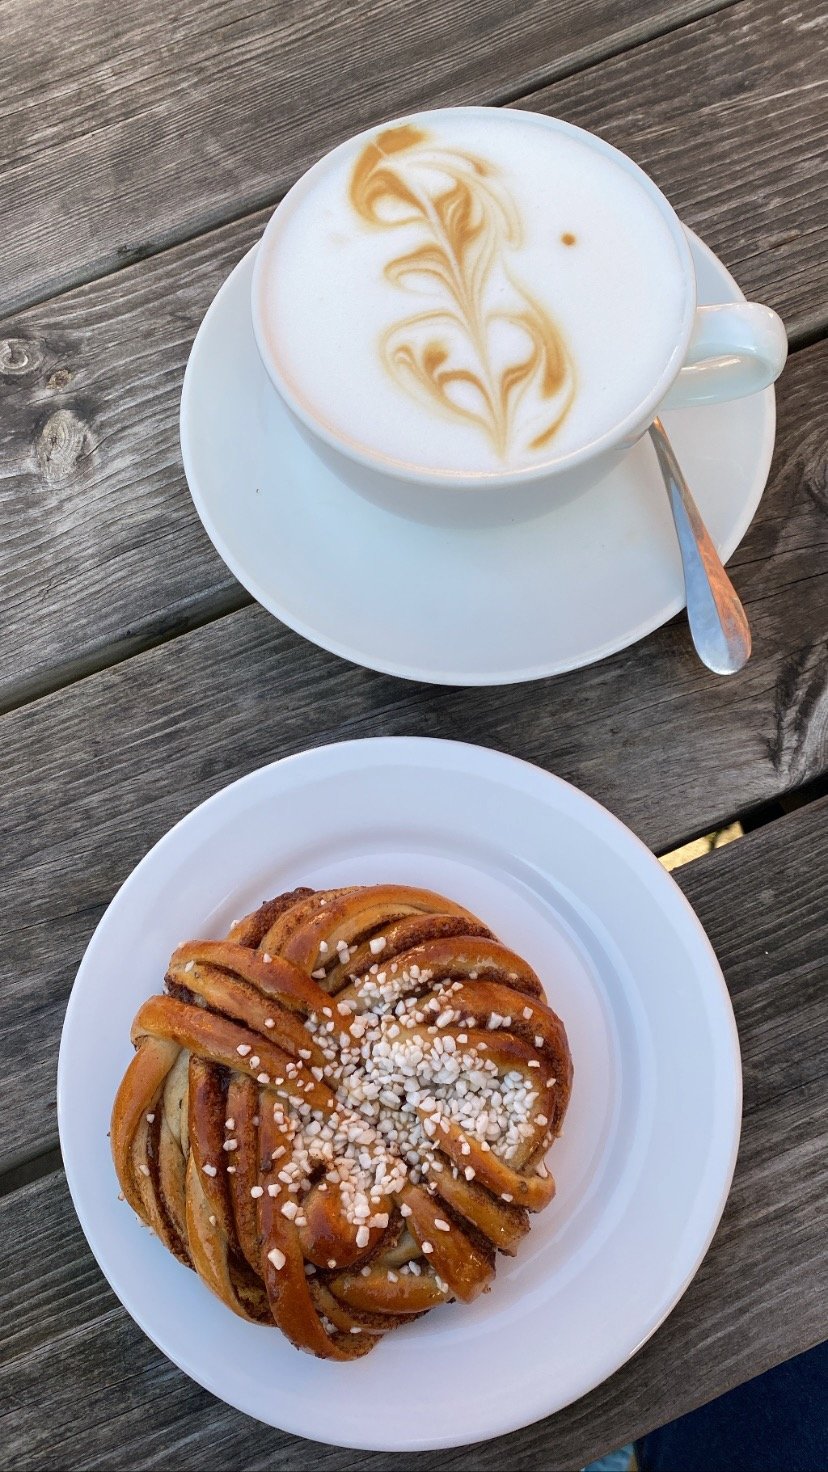 Fika in Schweden darf nicht fehlen: eine schwedische Tradition, die eine Kaffeepause mit Gebäck (typischerweise mit einer Kanelbulle (= Zimtschnecke)) beschreibt